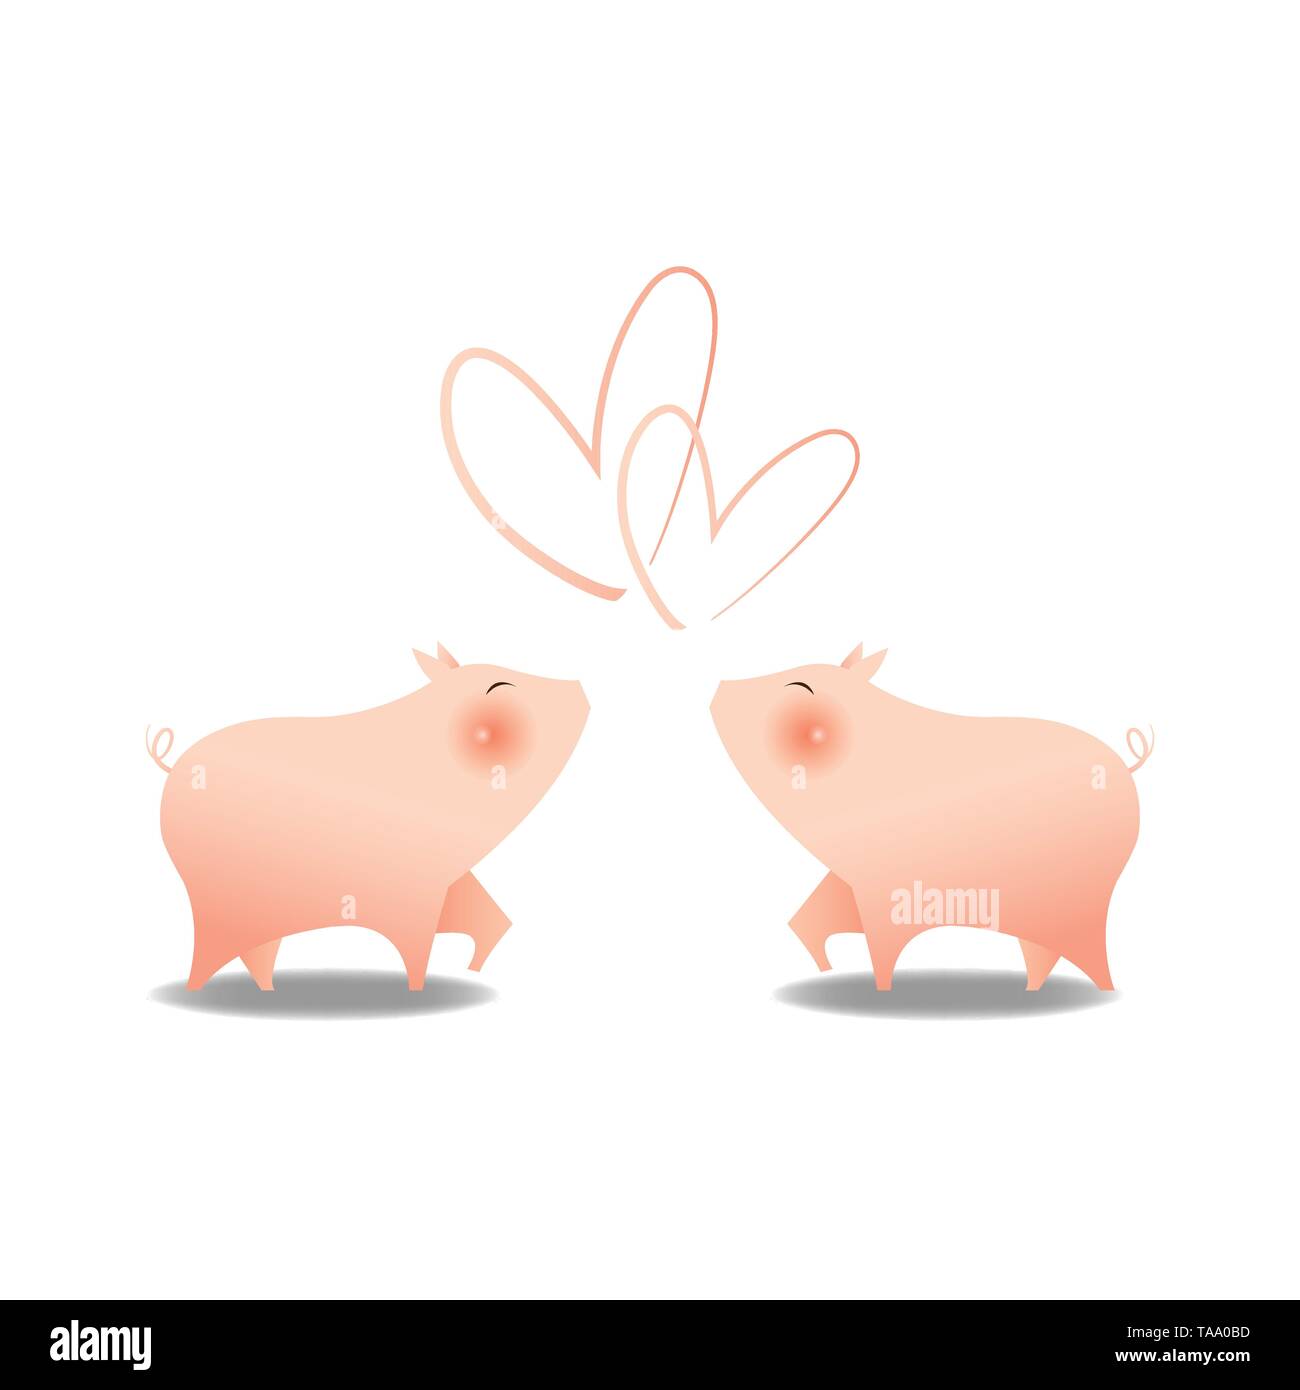 Zwei kleine niedliche Schweine Lächeln mit Big Pink Wange einander zugewandt mit Herzform obere für Liebe, Emotion, auf weißem Hintergrund. Gerne Chinesisch Stock Vektor